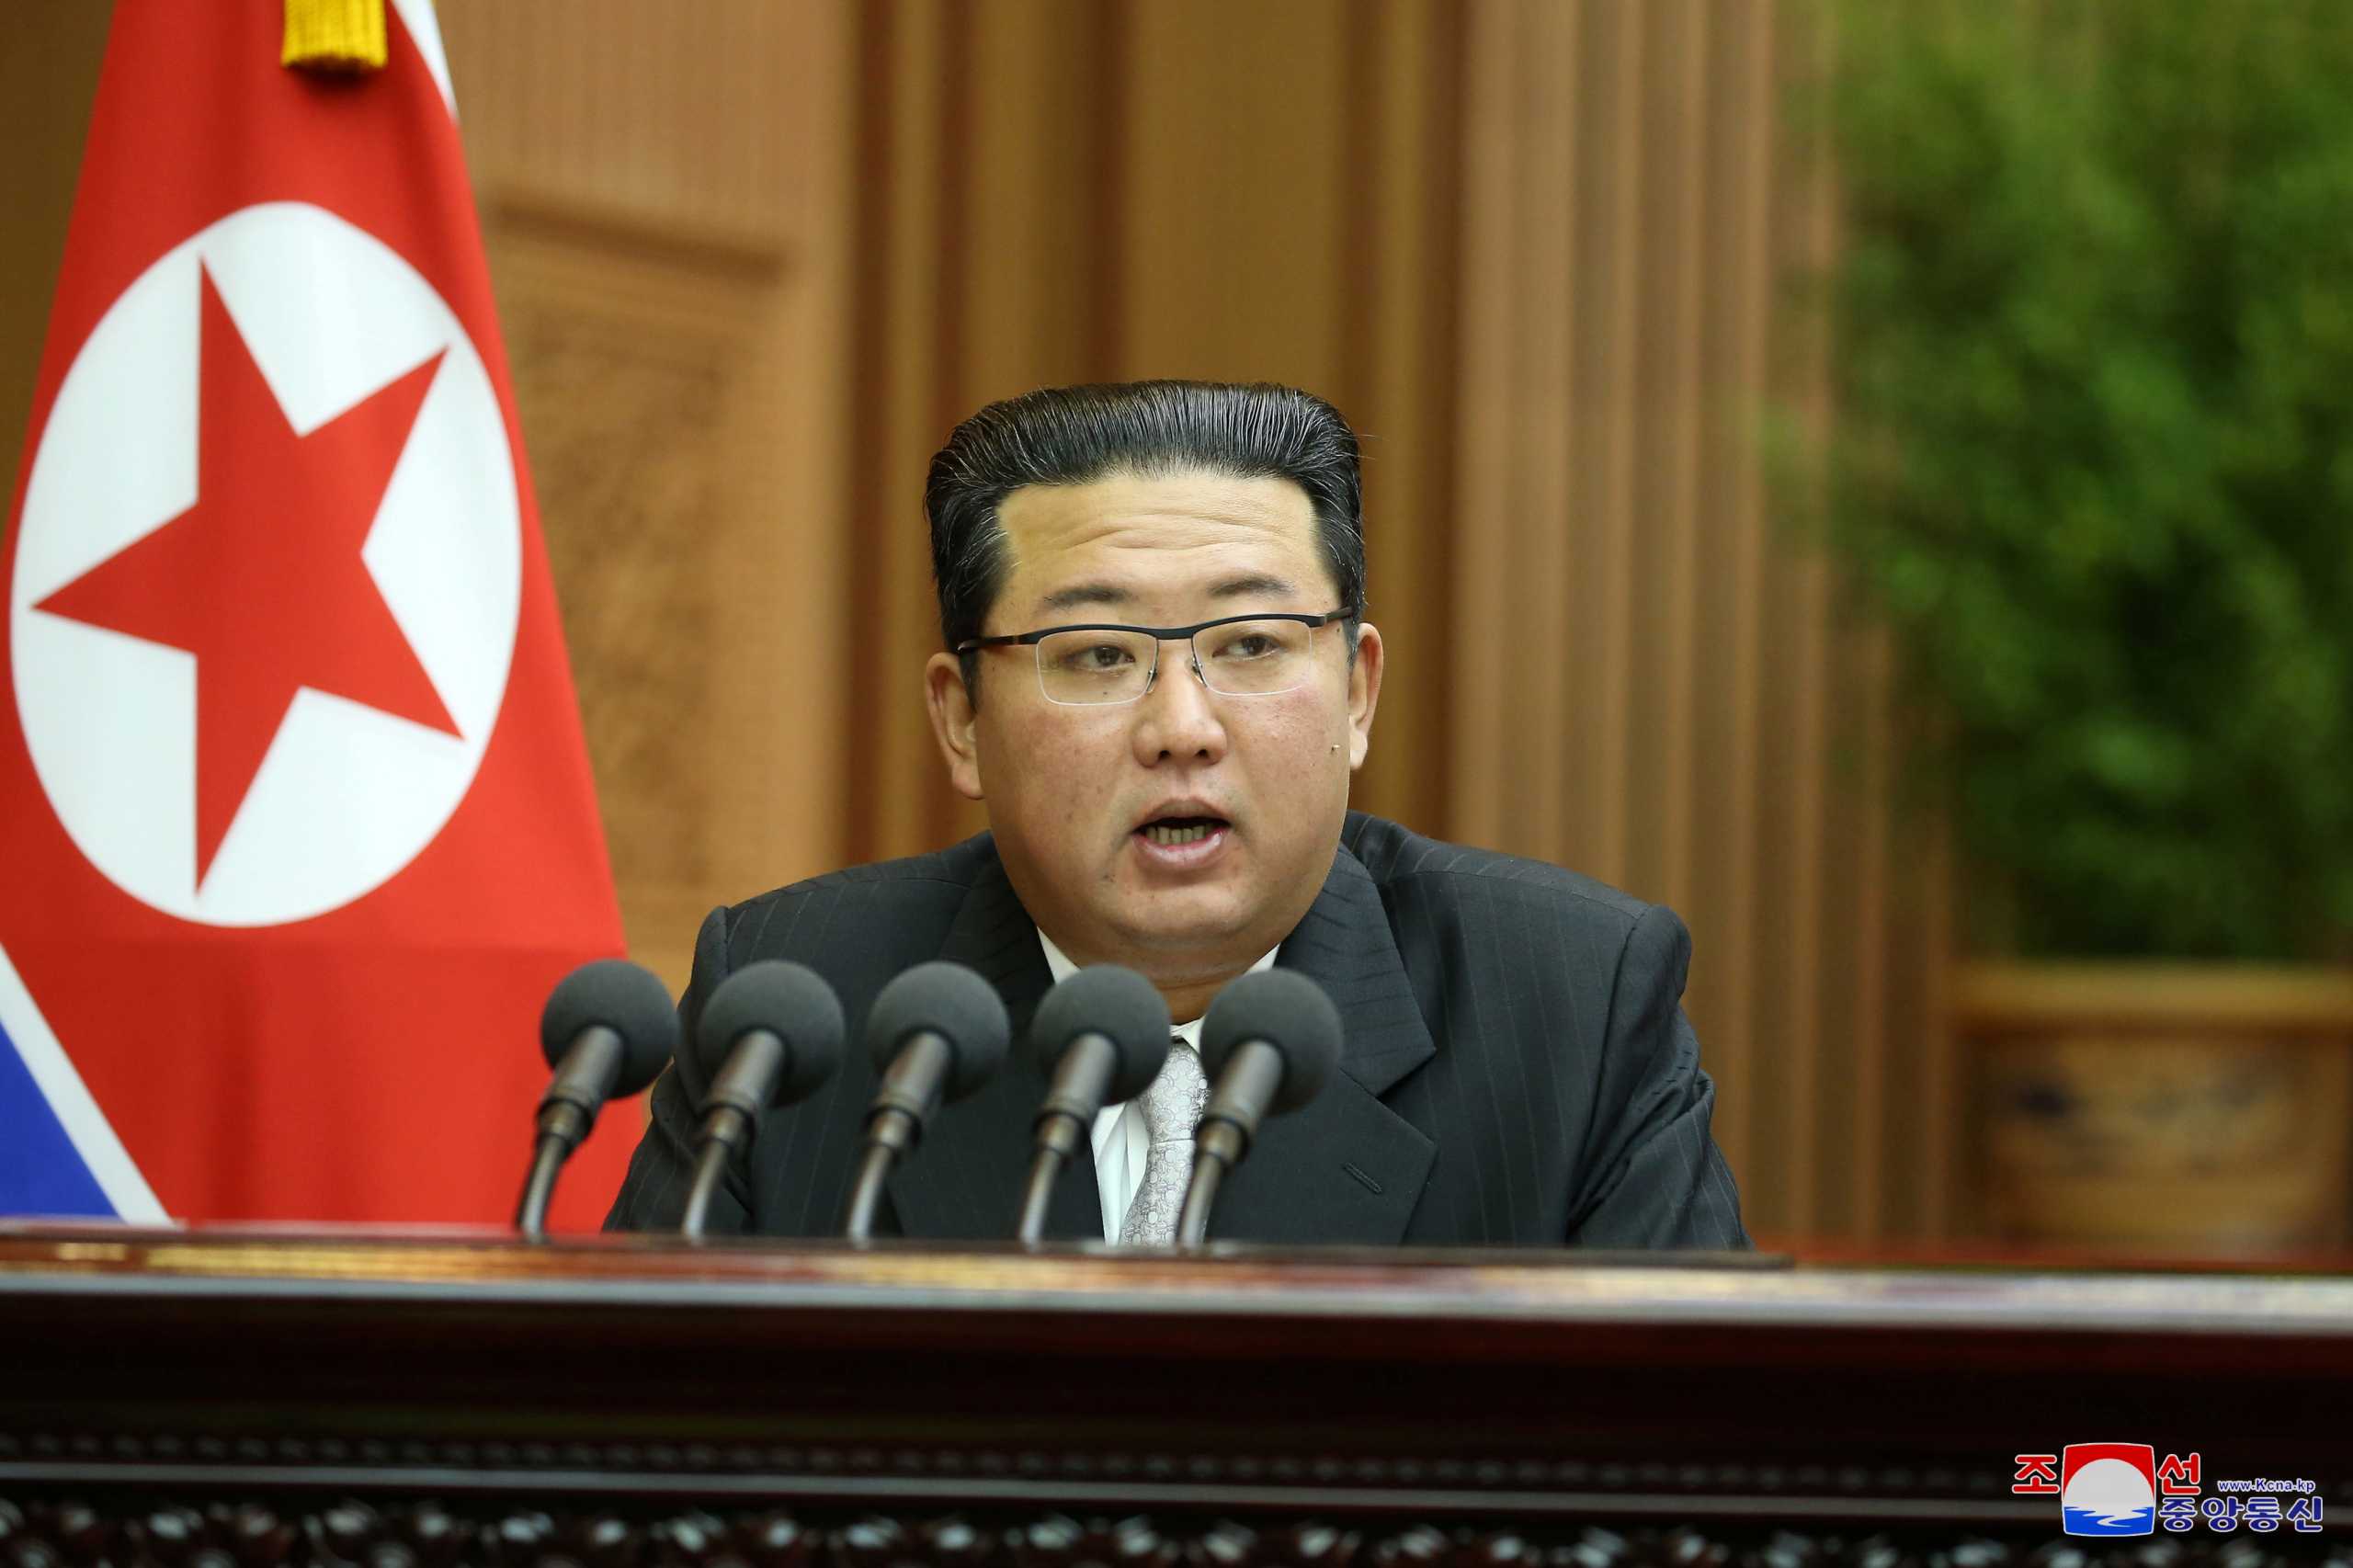 Βόρεια Κορέα: Αλλαγή ρότας από τον Κιμ Γιονγκ Ουν - Ζητά καλύτερη ζωή των πολιτών